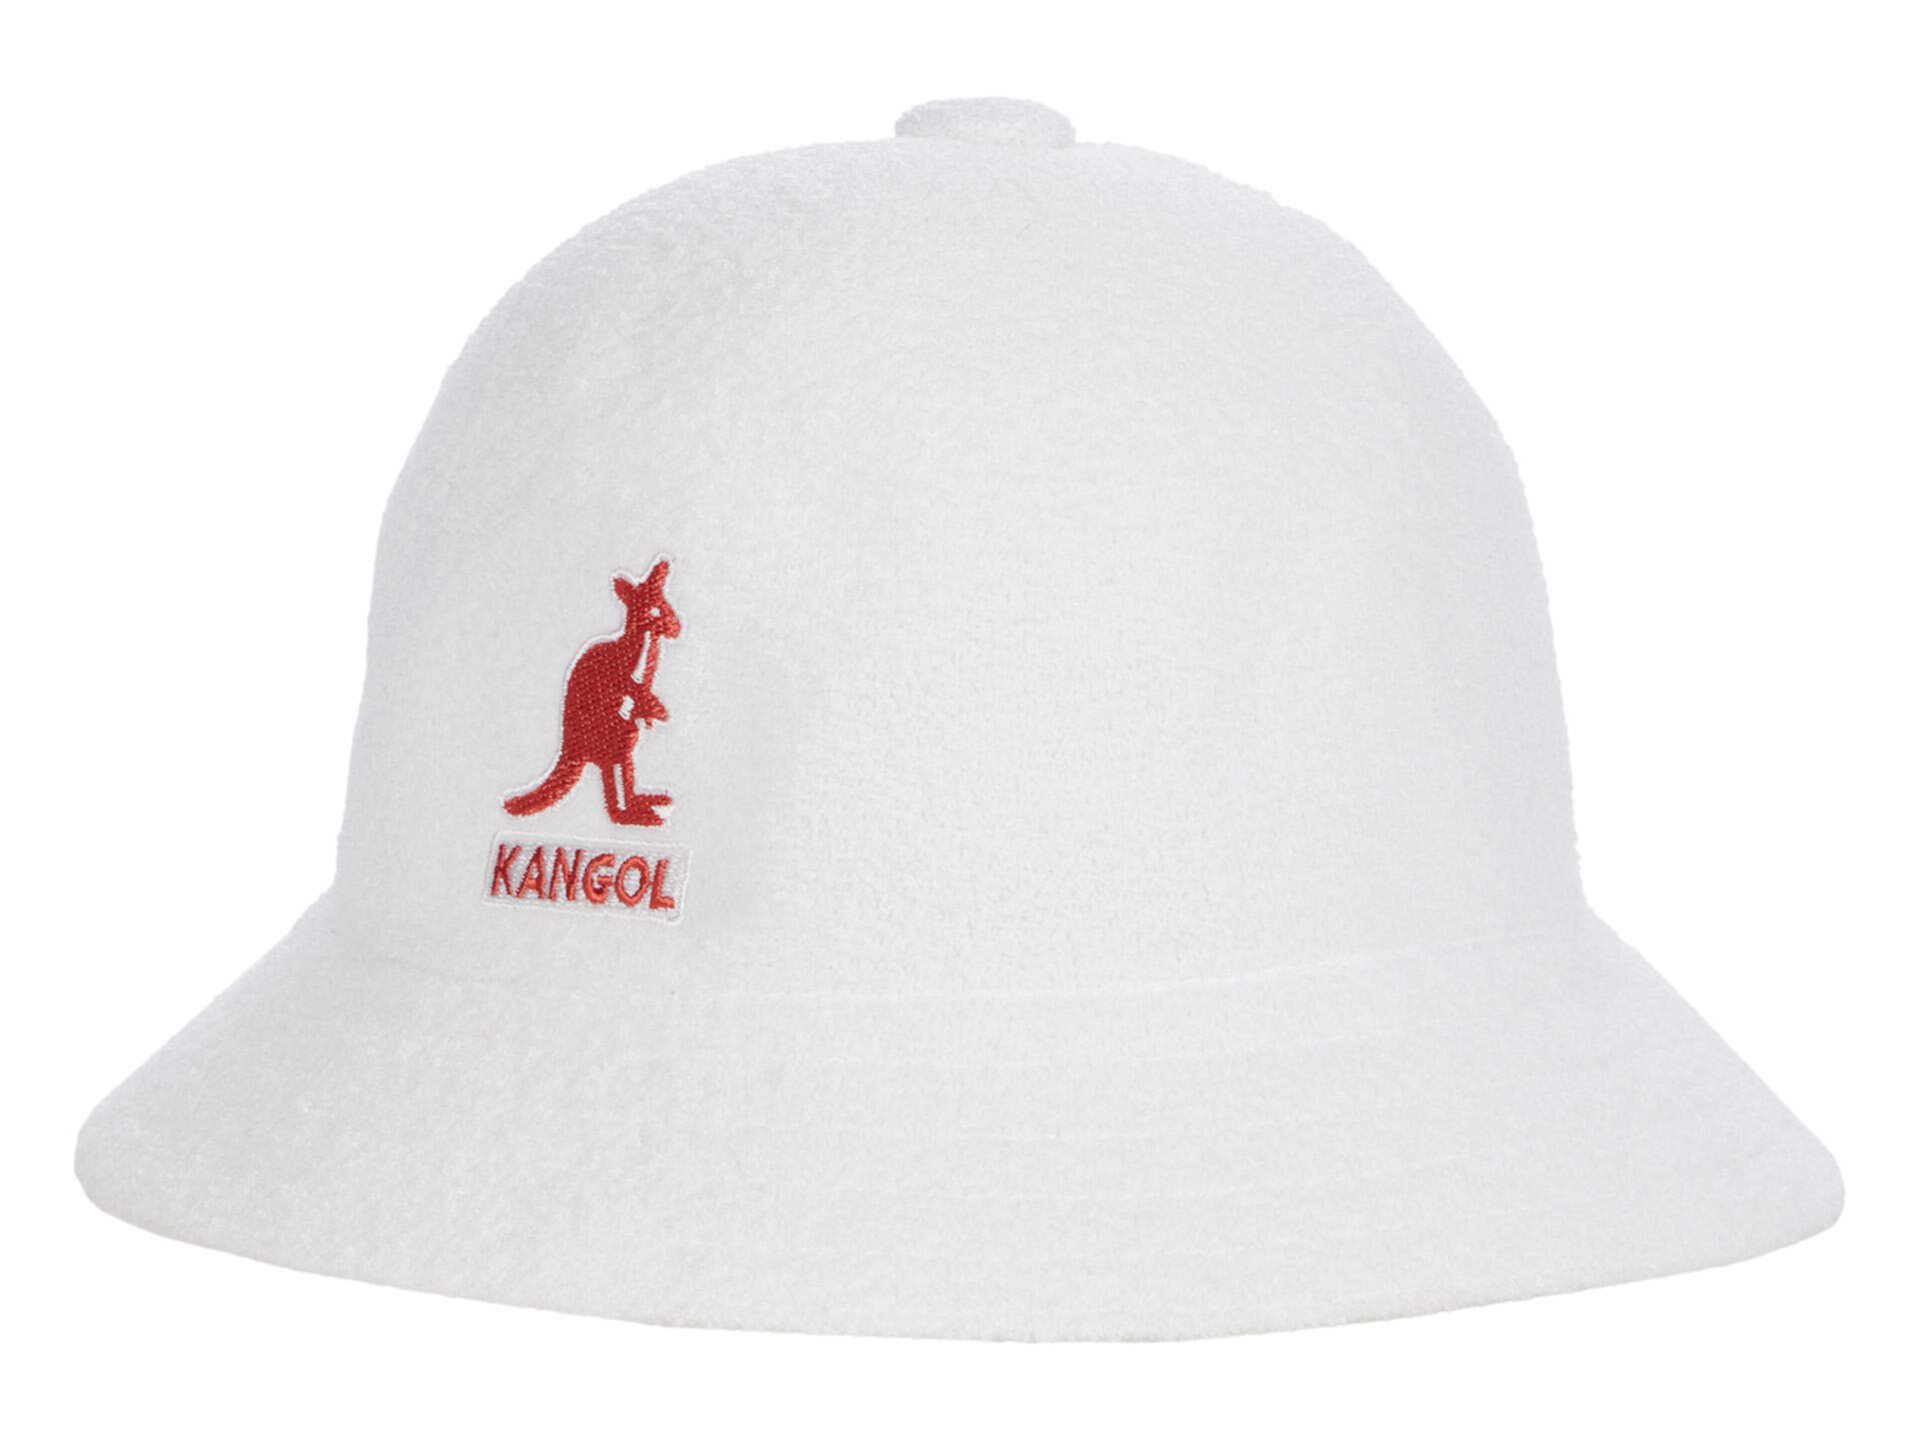 Повседневный стиль с большим логотипом Kangol